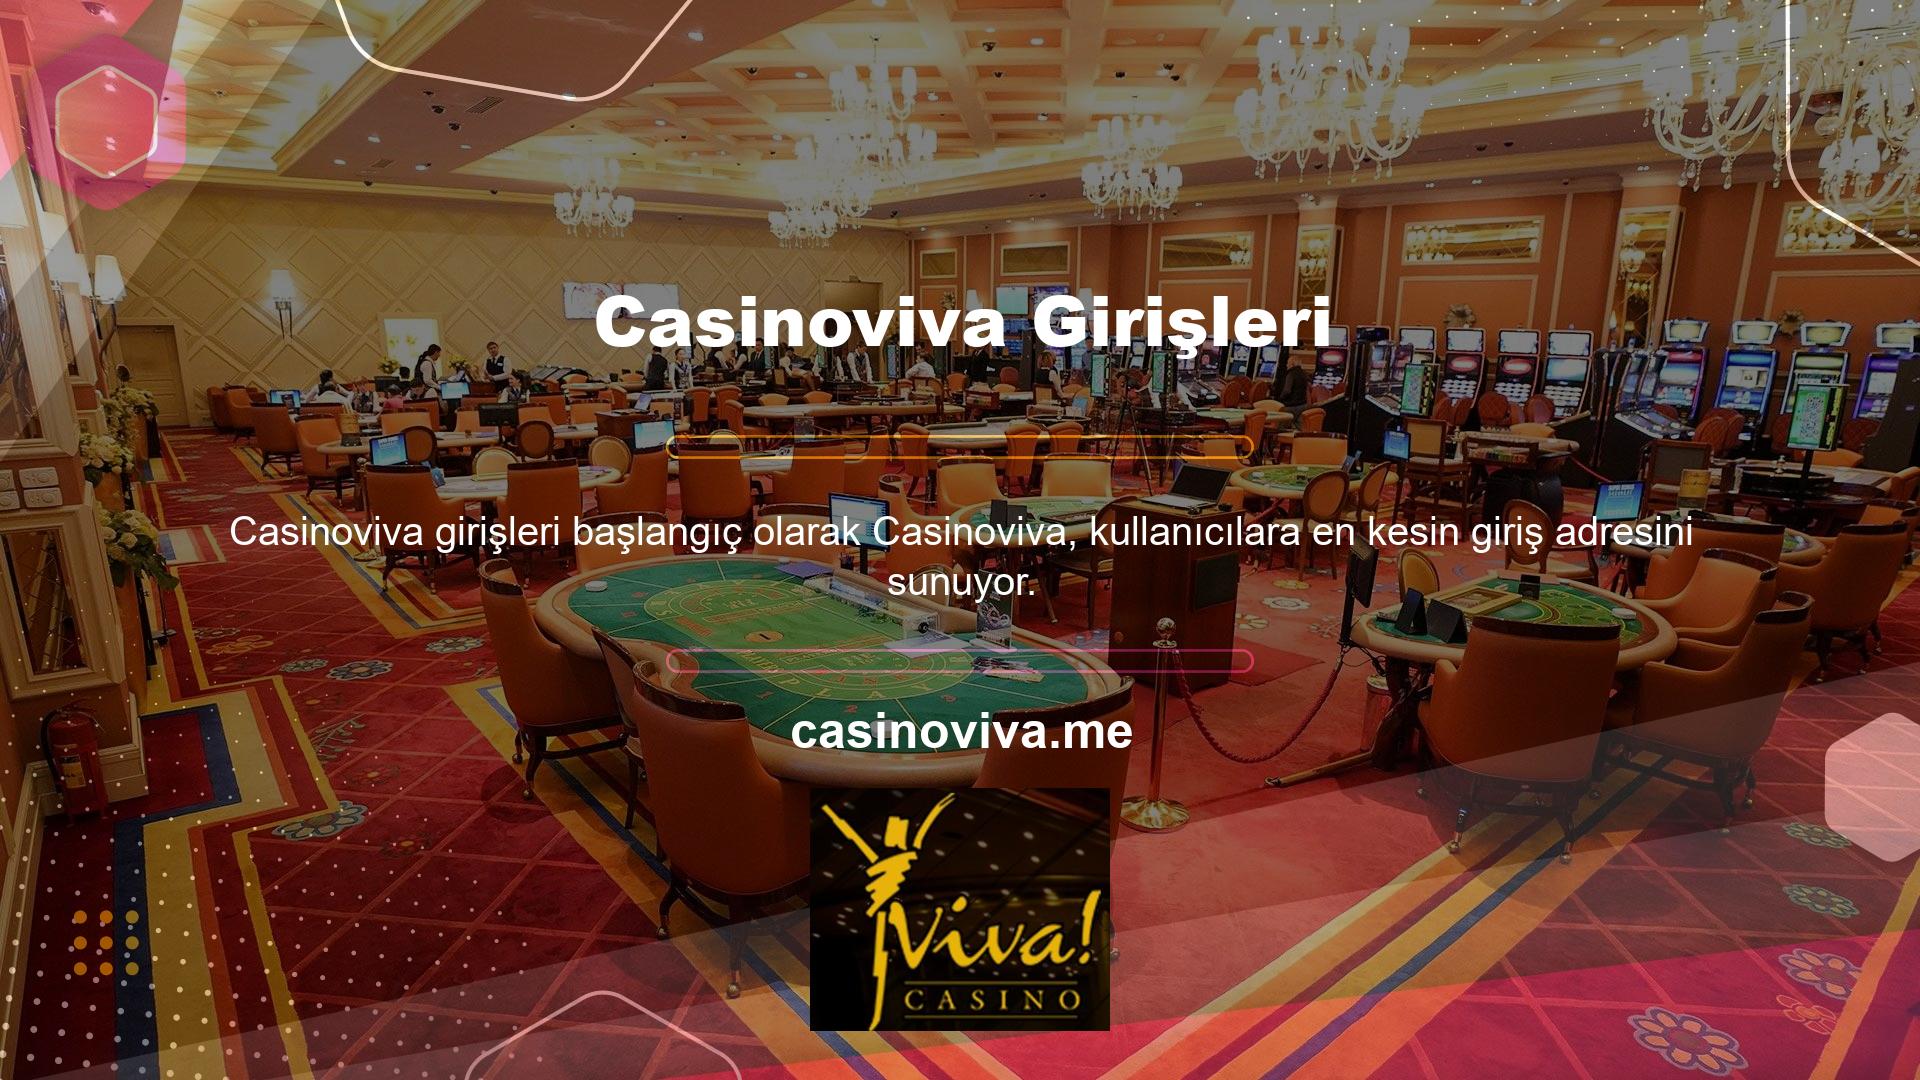 Ayrıca Casinoviva yeni katılan kişiler için çok sayıda avantajlı fırsat bulunmaktadır